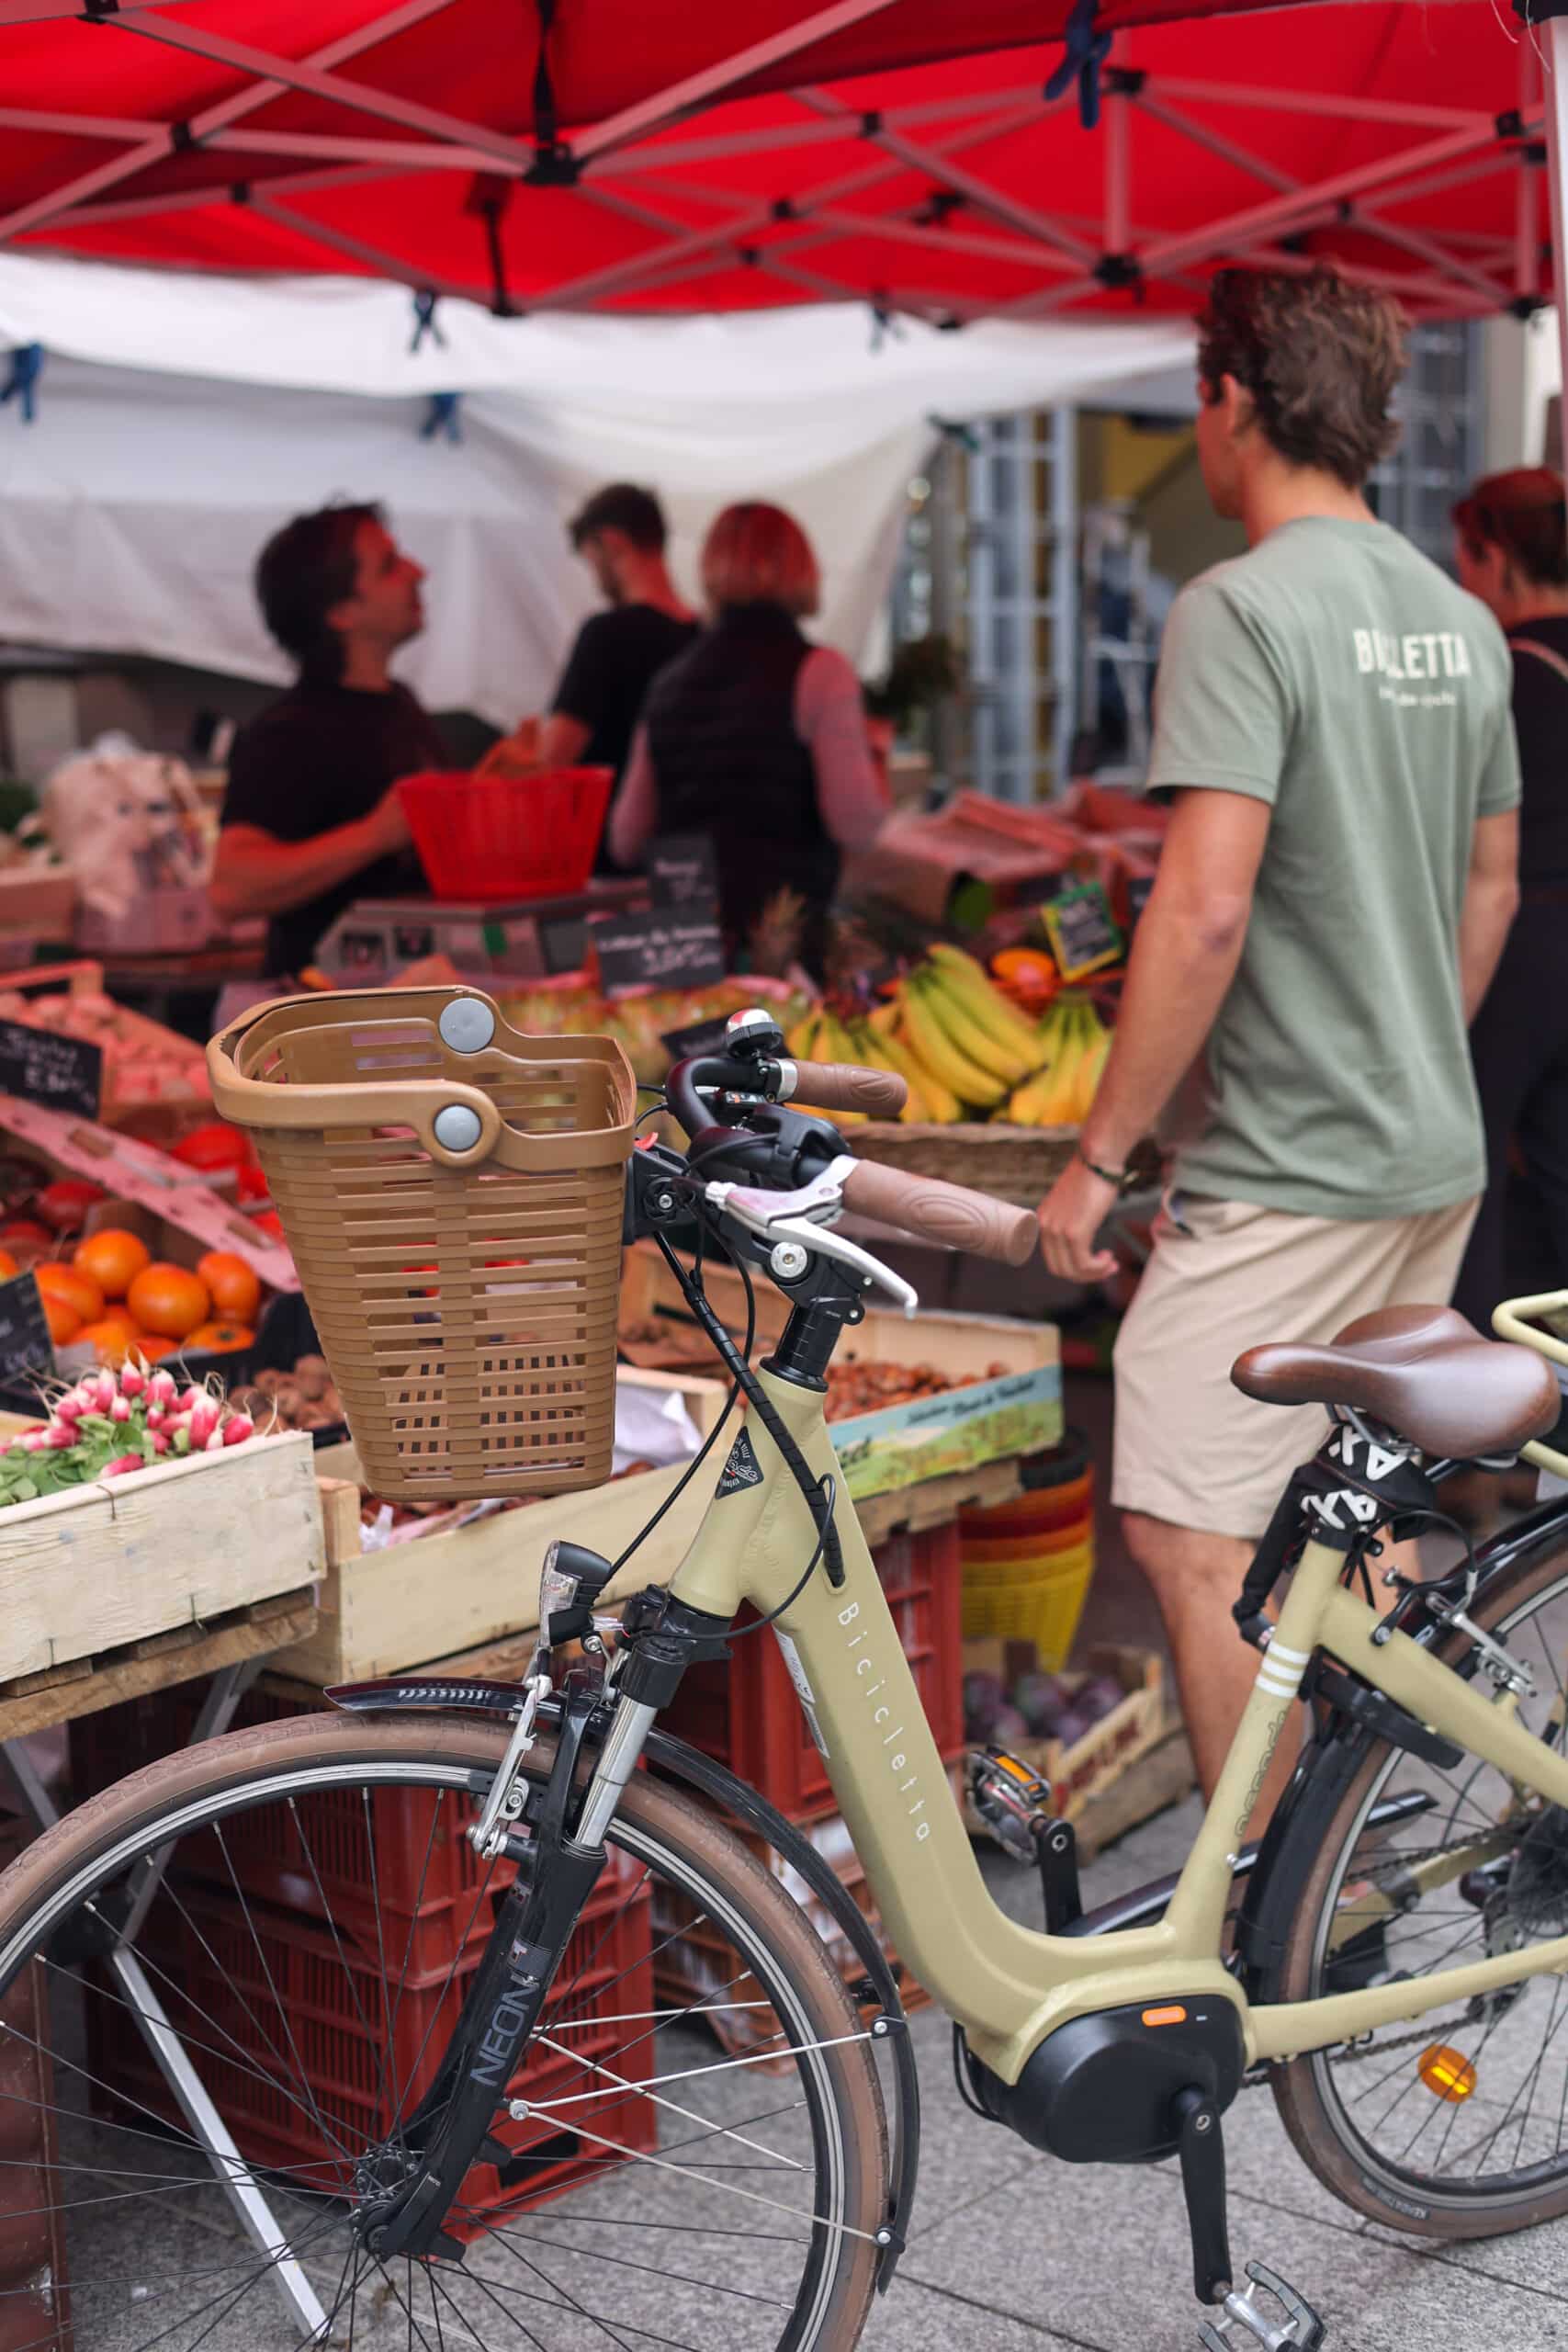 Bicicletta anglet marché halles biarritz fruits et légumes courses arrêt minute vélo